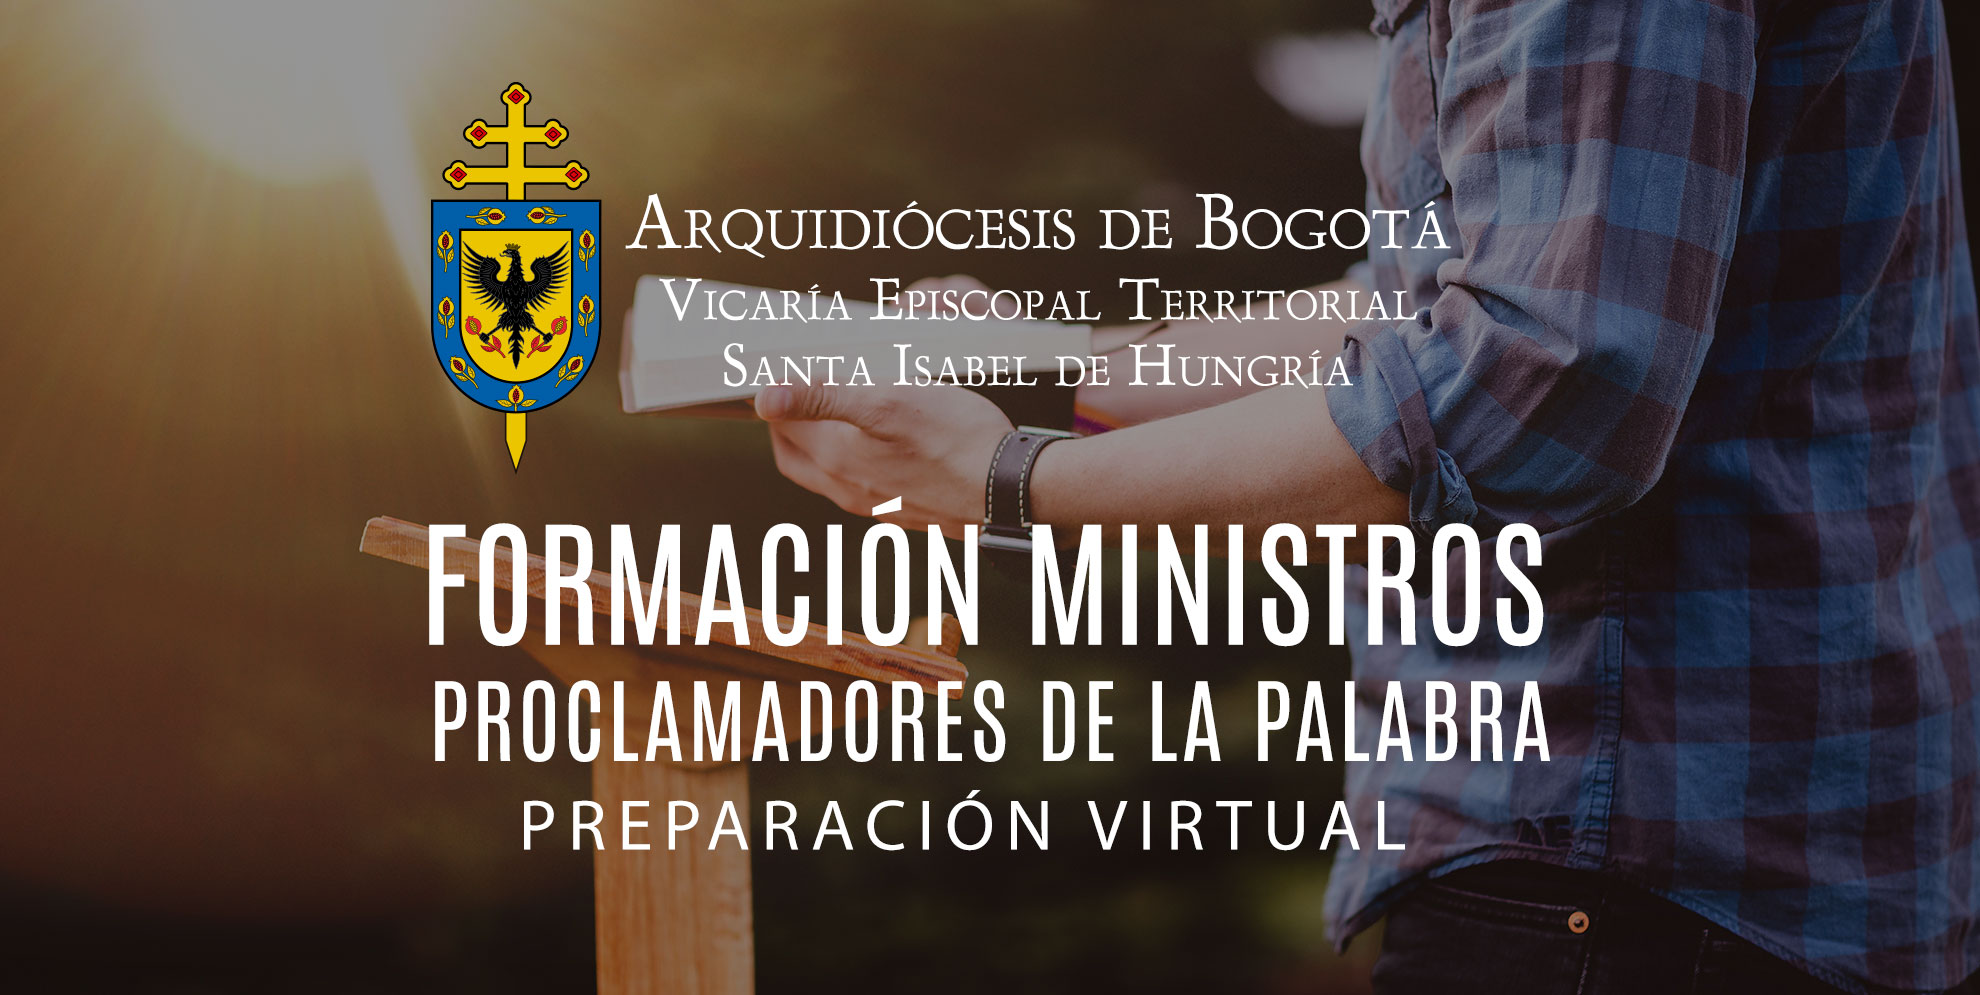 FORMACIÓN MINISTROS PROCLAMADORES DE LA PALABRA